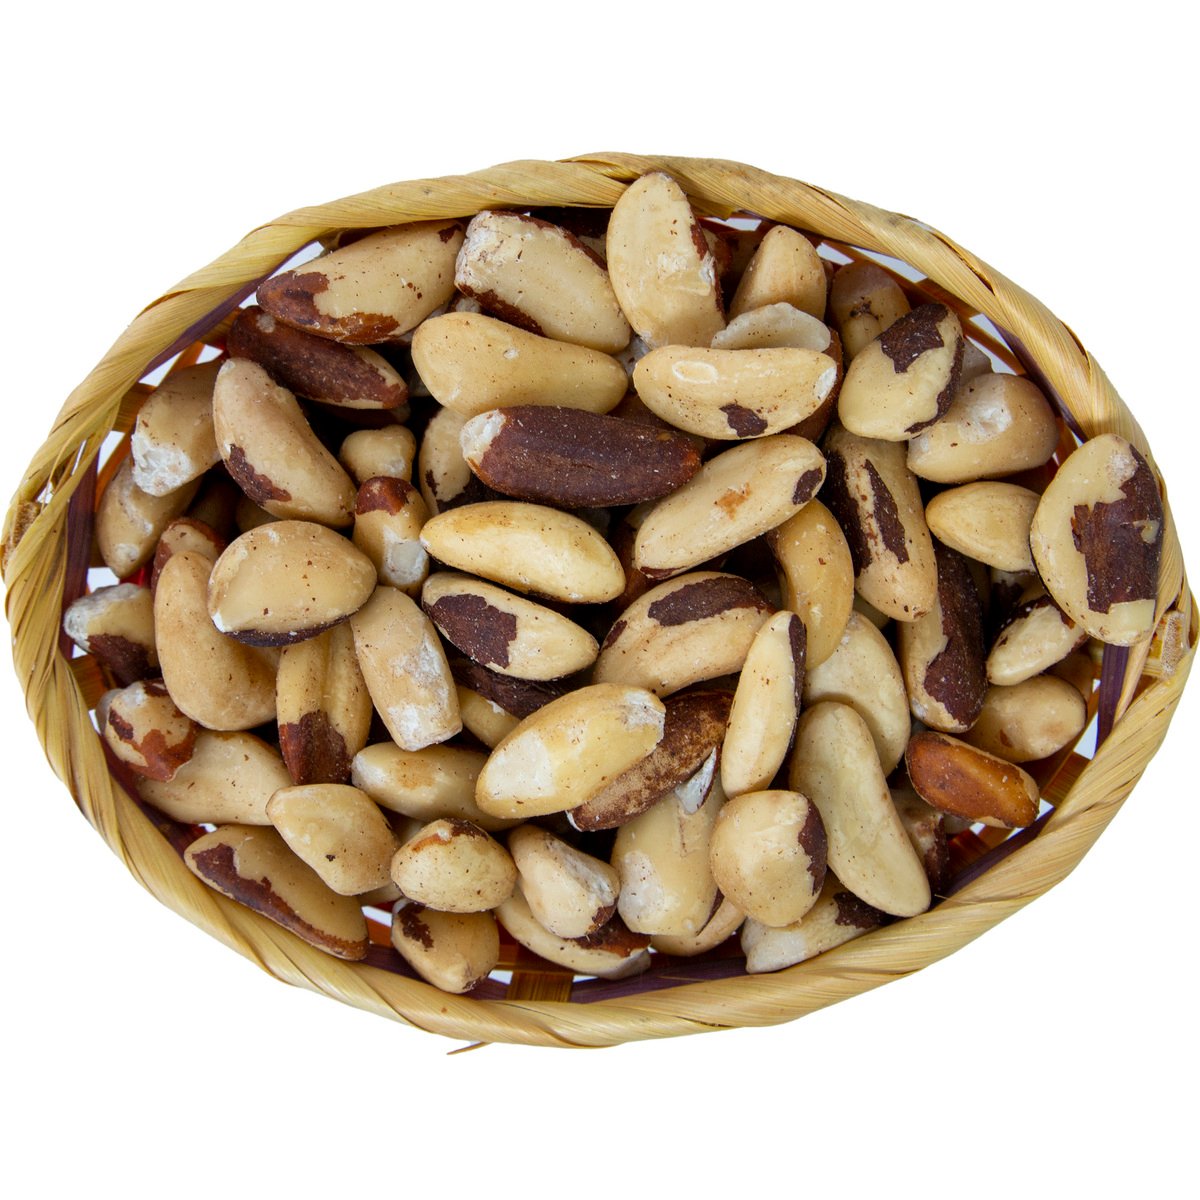 اشتري قم بشراء اجروفينو جوز برازيلي عضوي ٢٥٠ جرام تقريباً Online at Best Price من الموقع - من لولو هايبر ماركت Roastery Nuts في الامارات